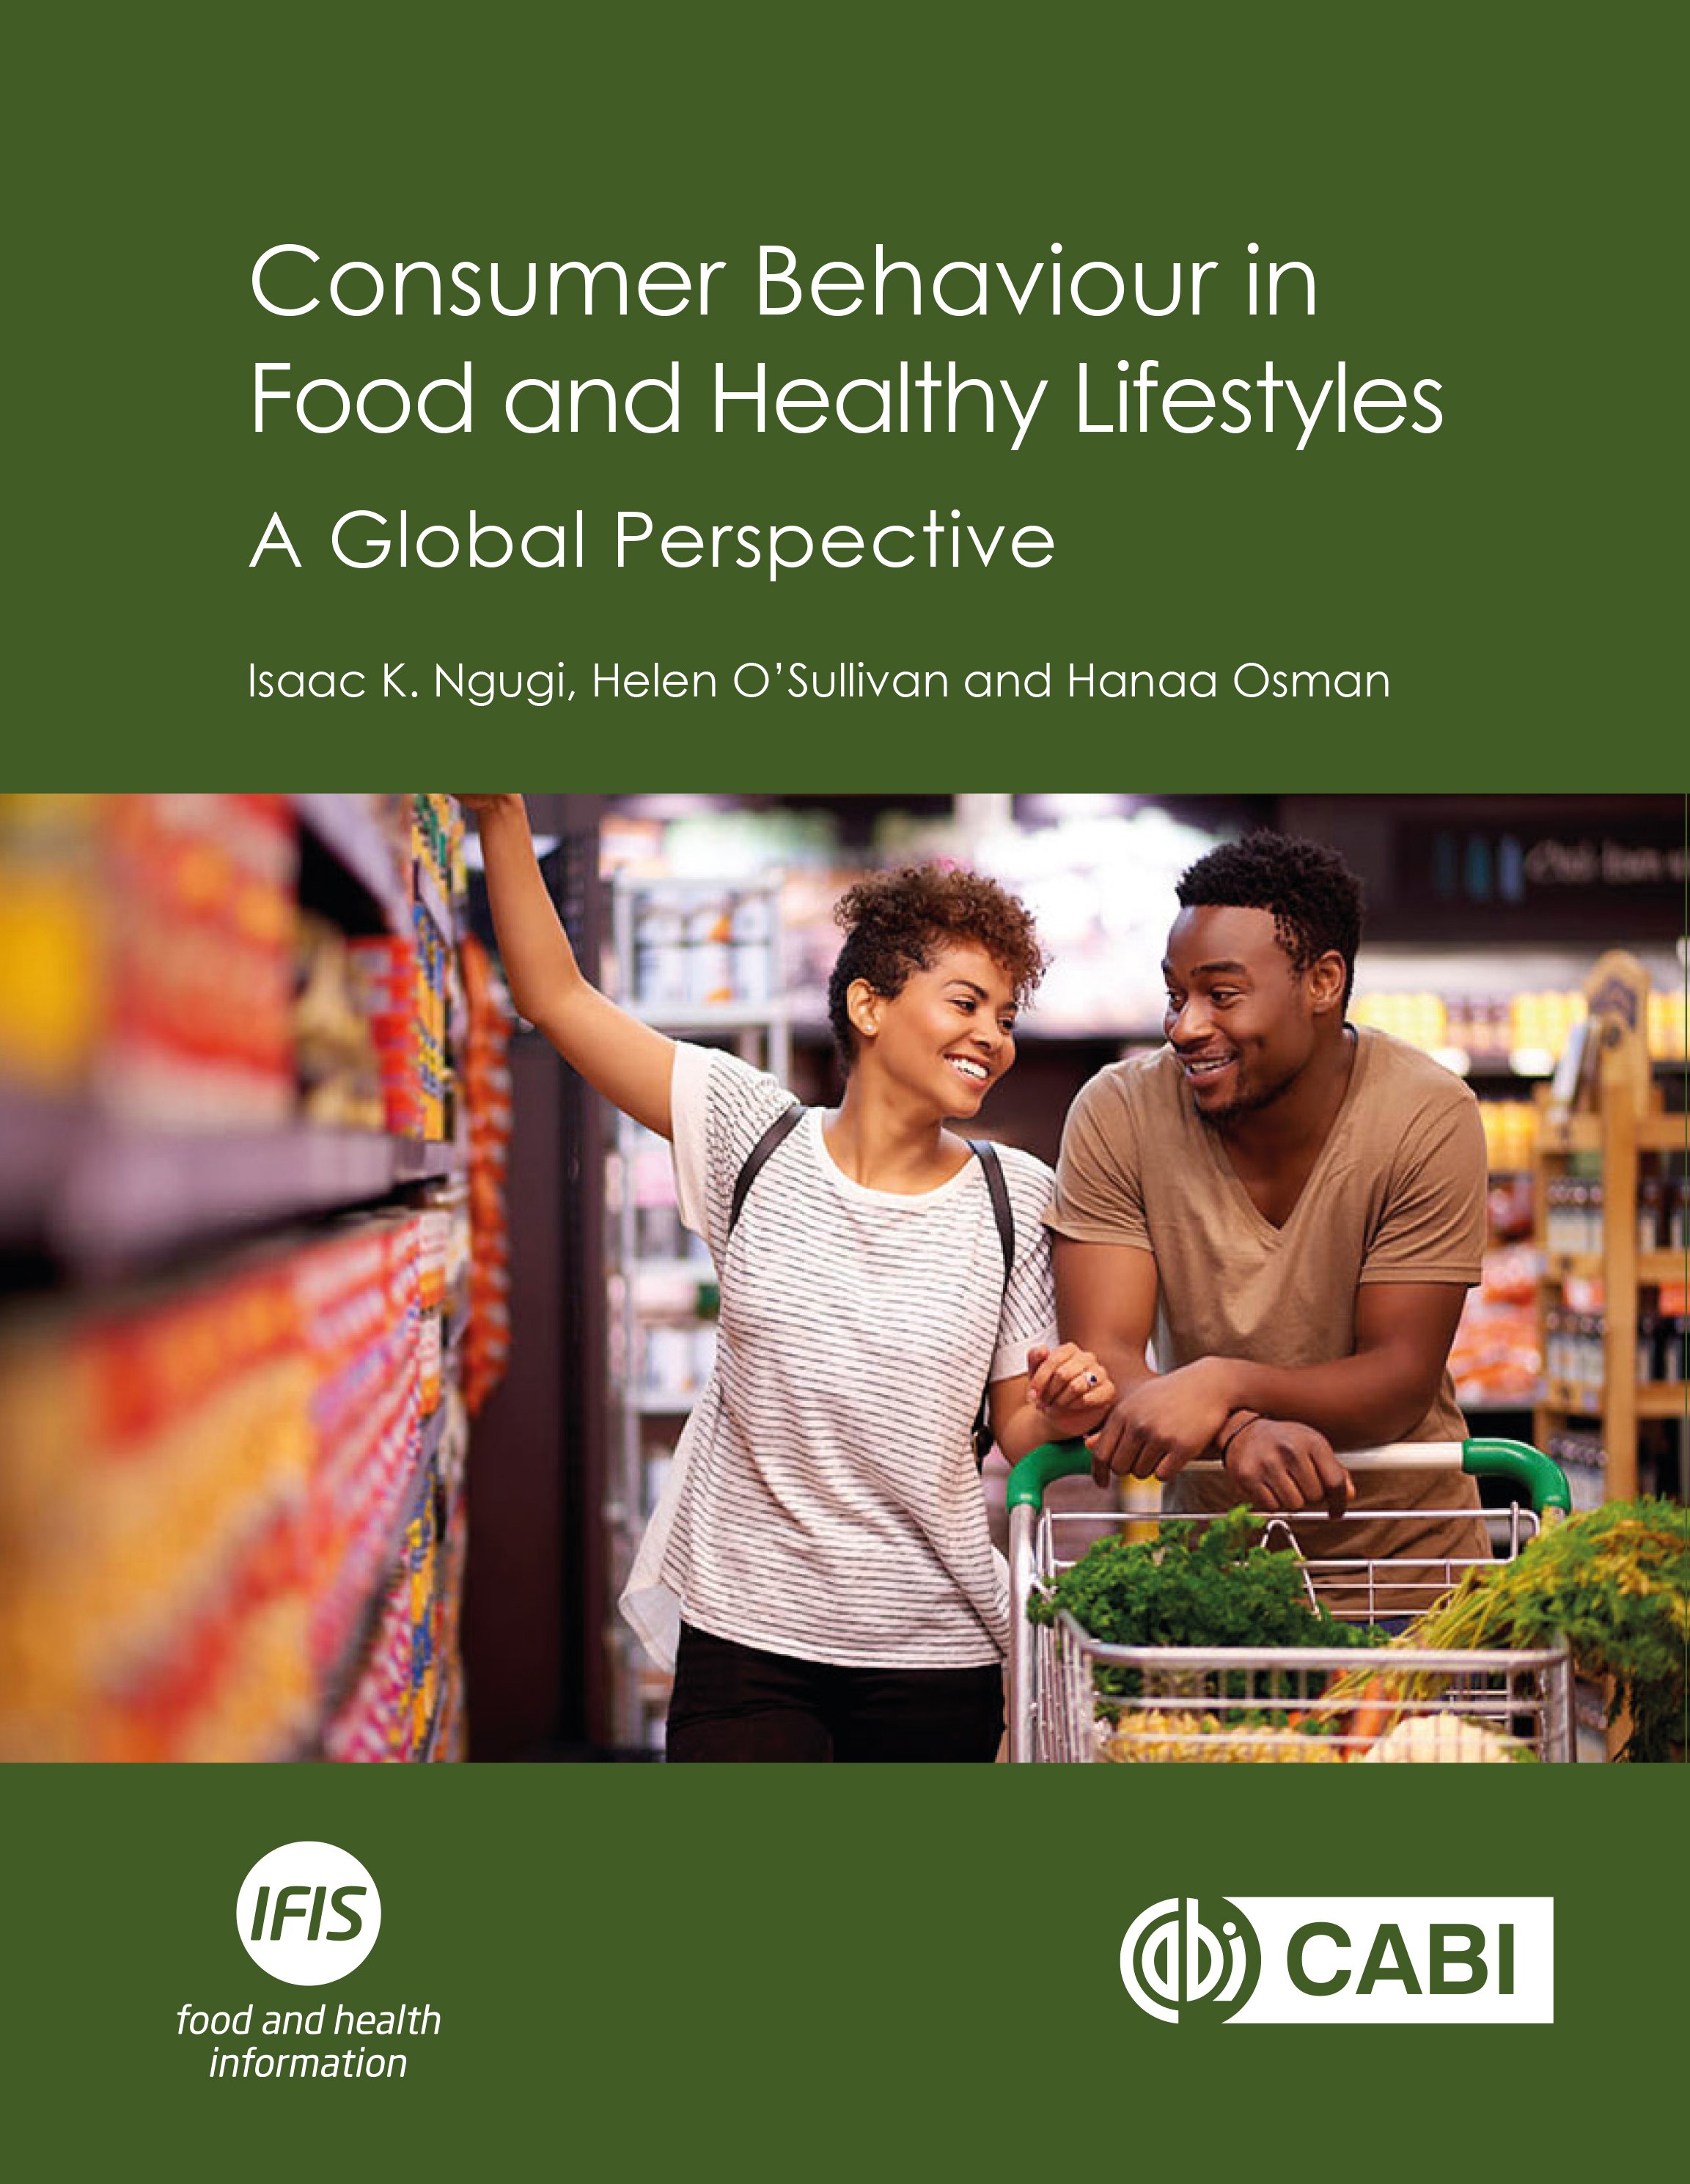 Consumer Behaviour book Ngugi CABI IFIS 2-1